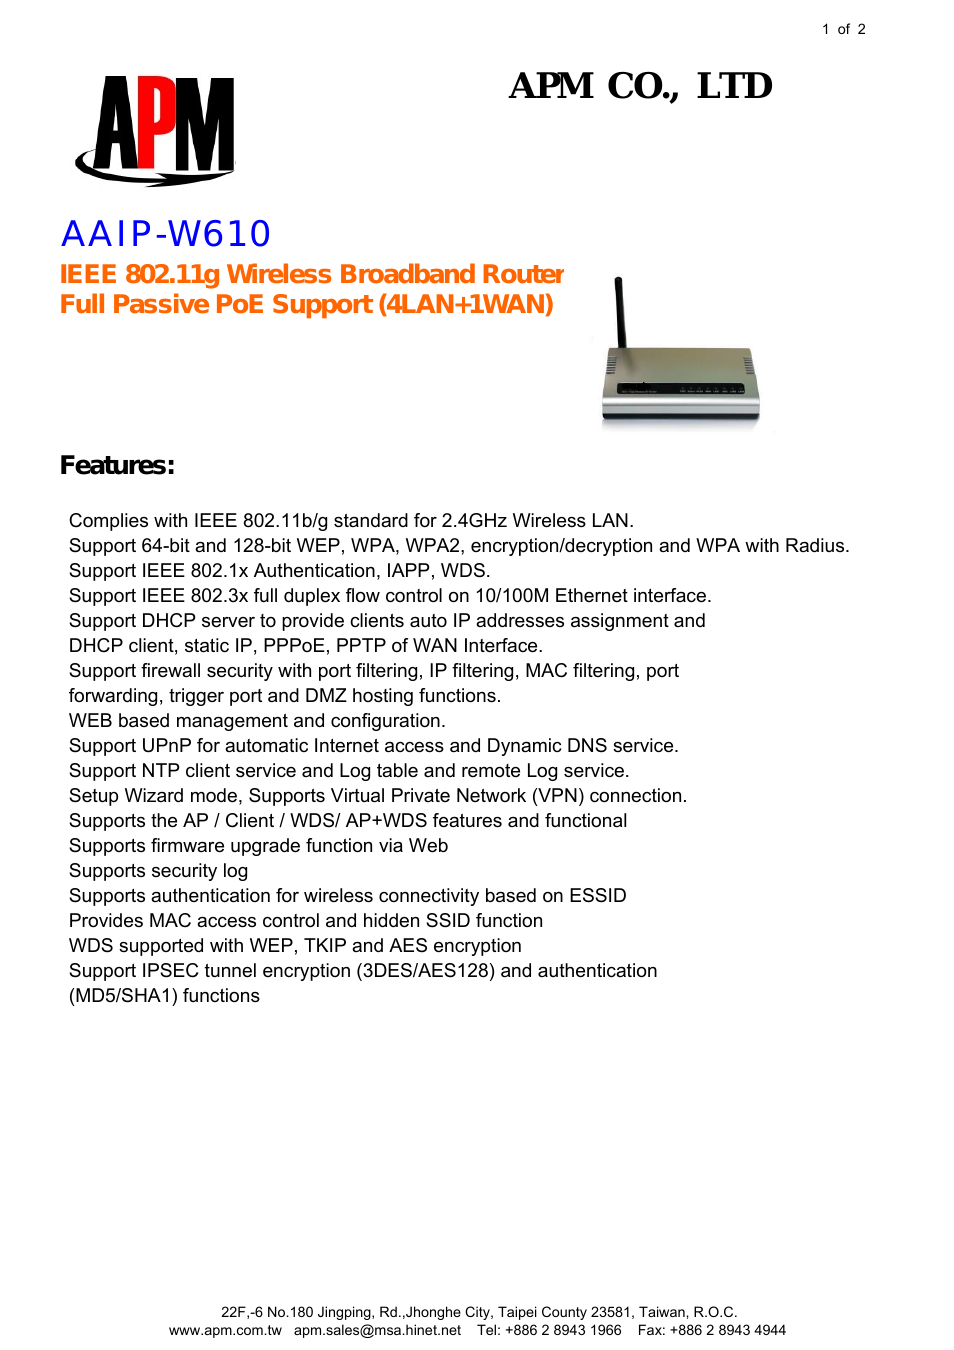 AAIP-W610